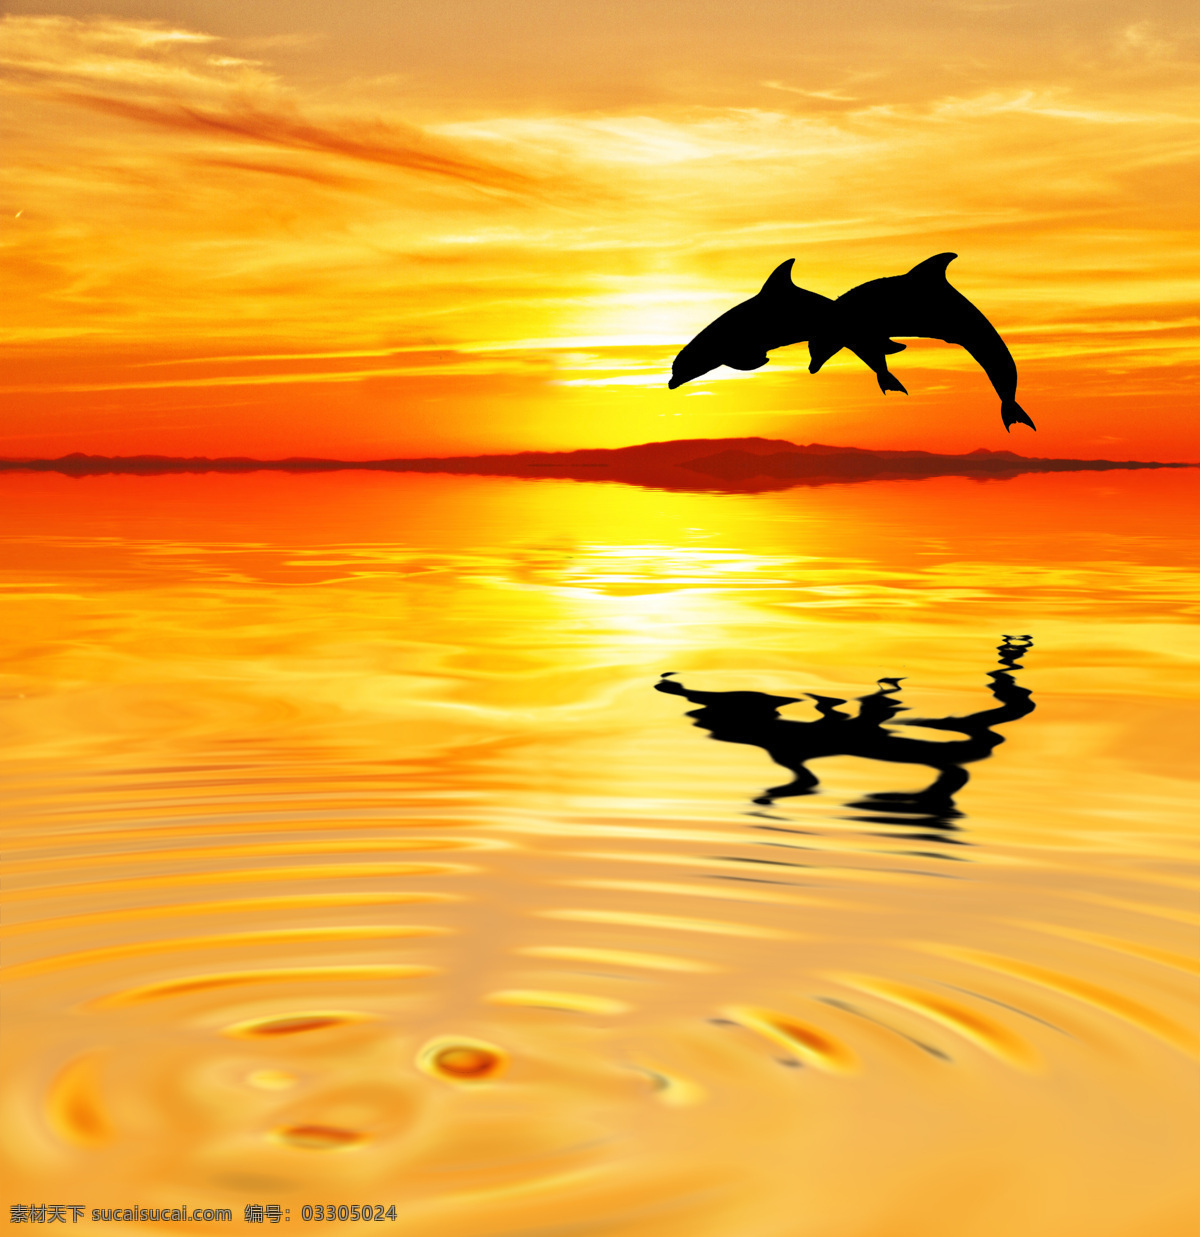 跳出 水 面的 海豚 天空 海岸风景 美丽风景 自然风光 美丽景色 自然美景 自然风景 自然景观 其他风光 风景图片